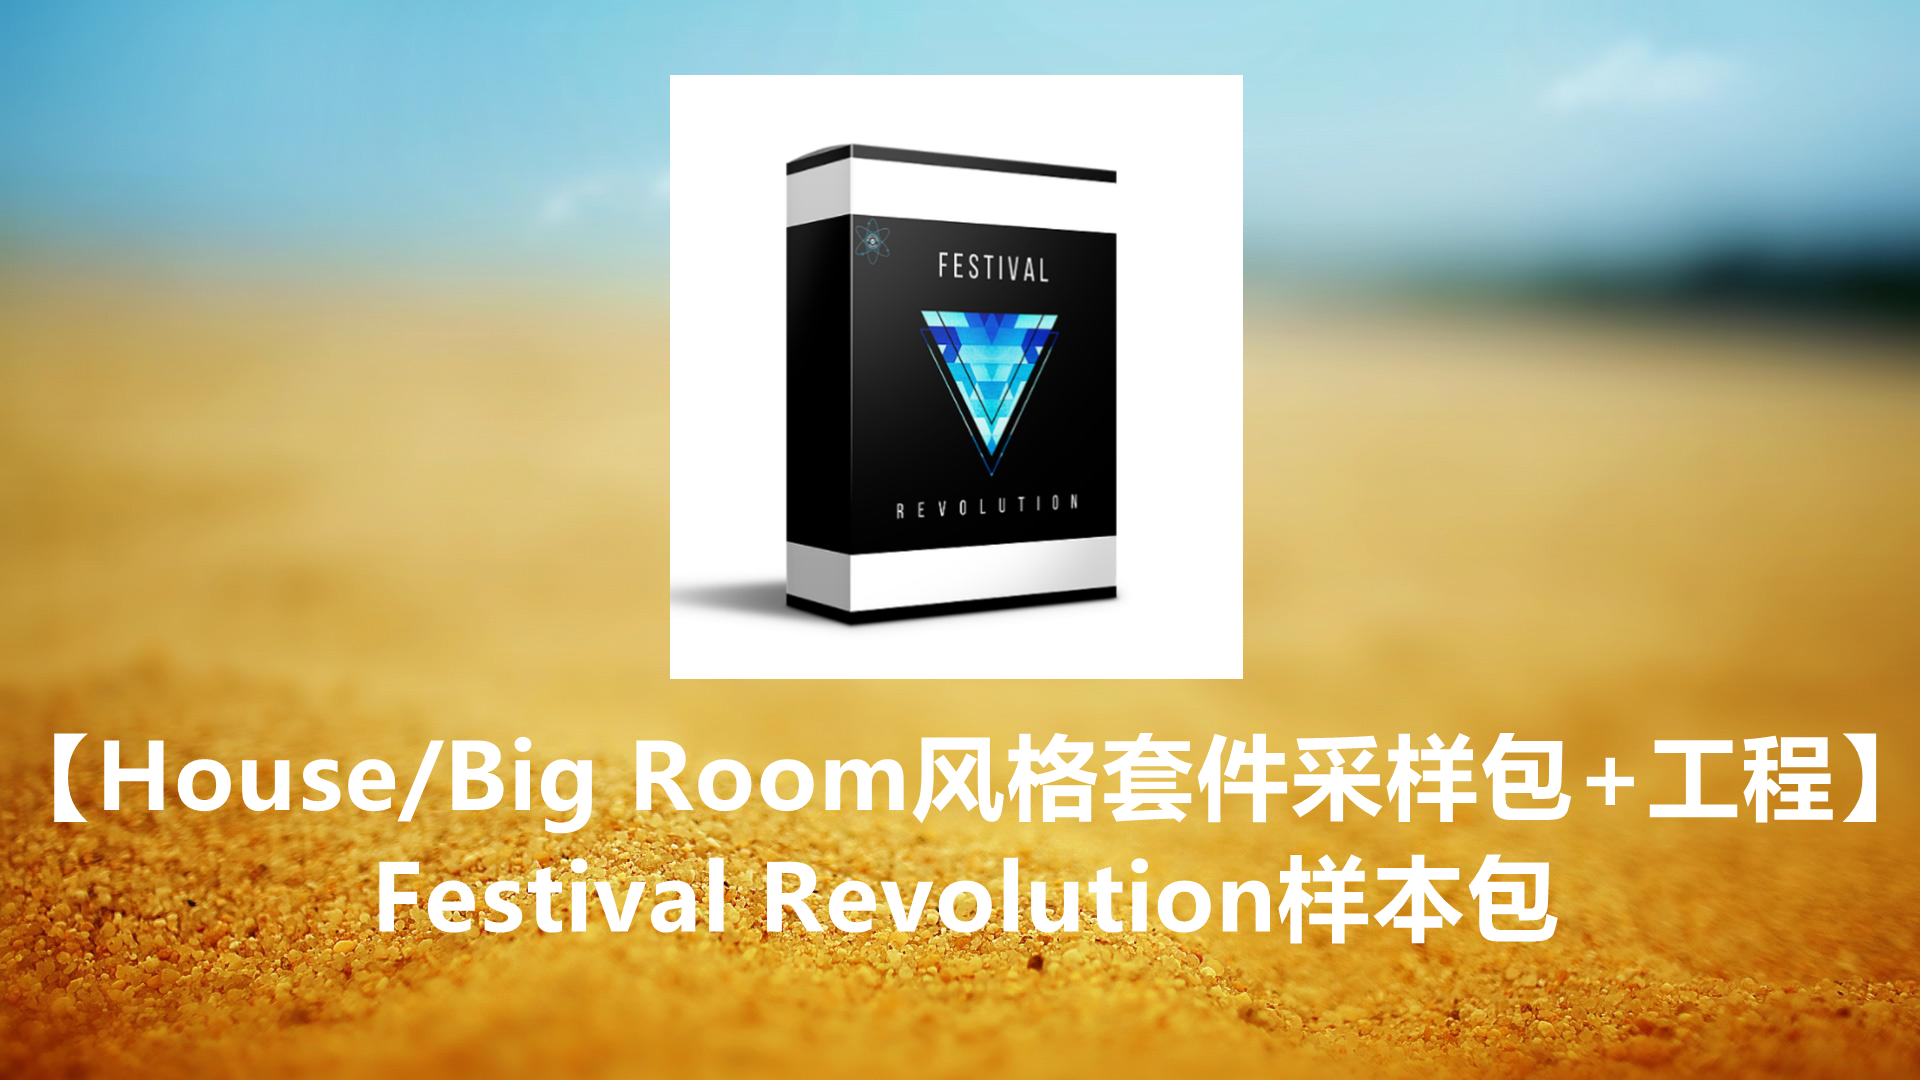 【House/Big Room风格套件采样包+工程】Festival Revolution样本包